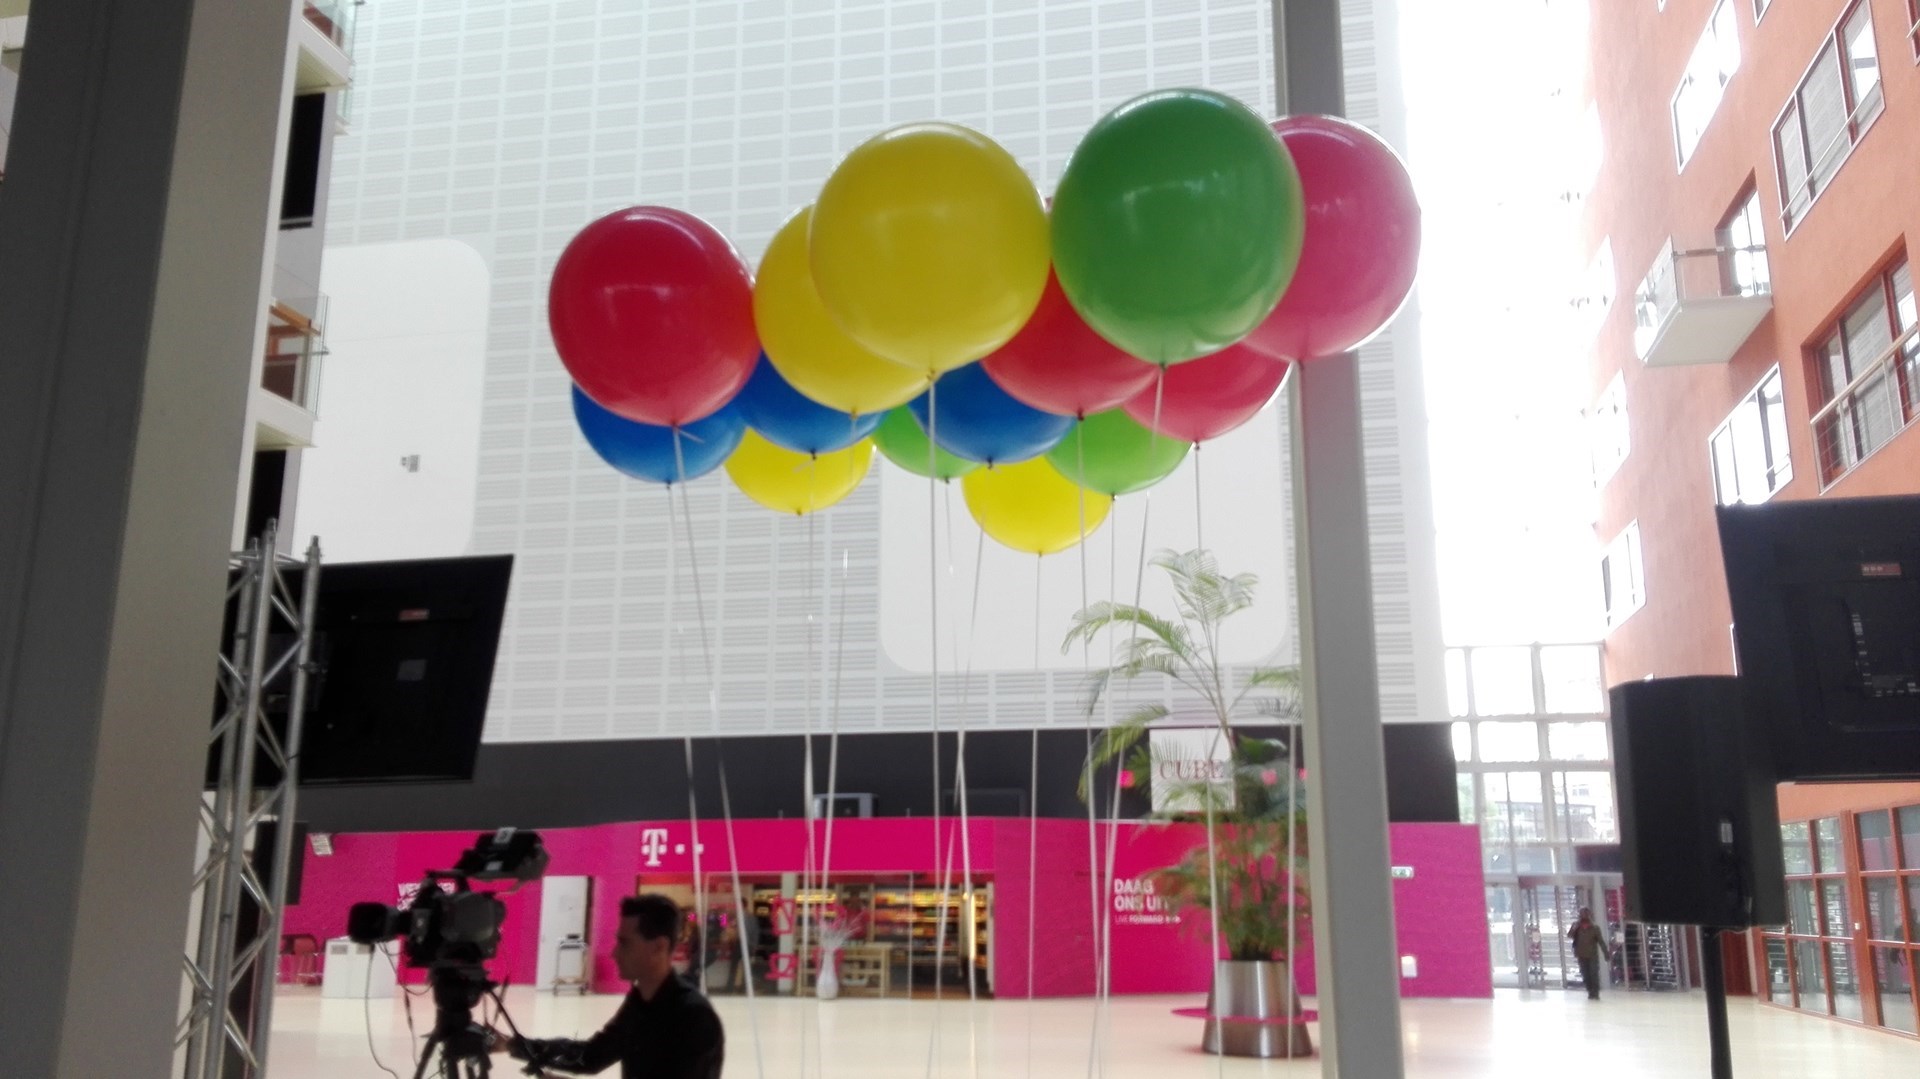 reuze ballonnen voor T Mobile Den Haag ter introductie nieuw logo